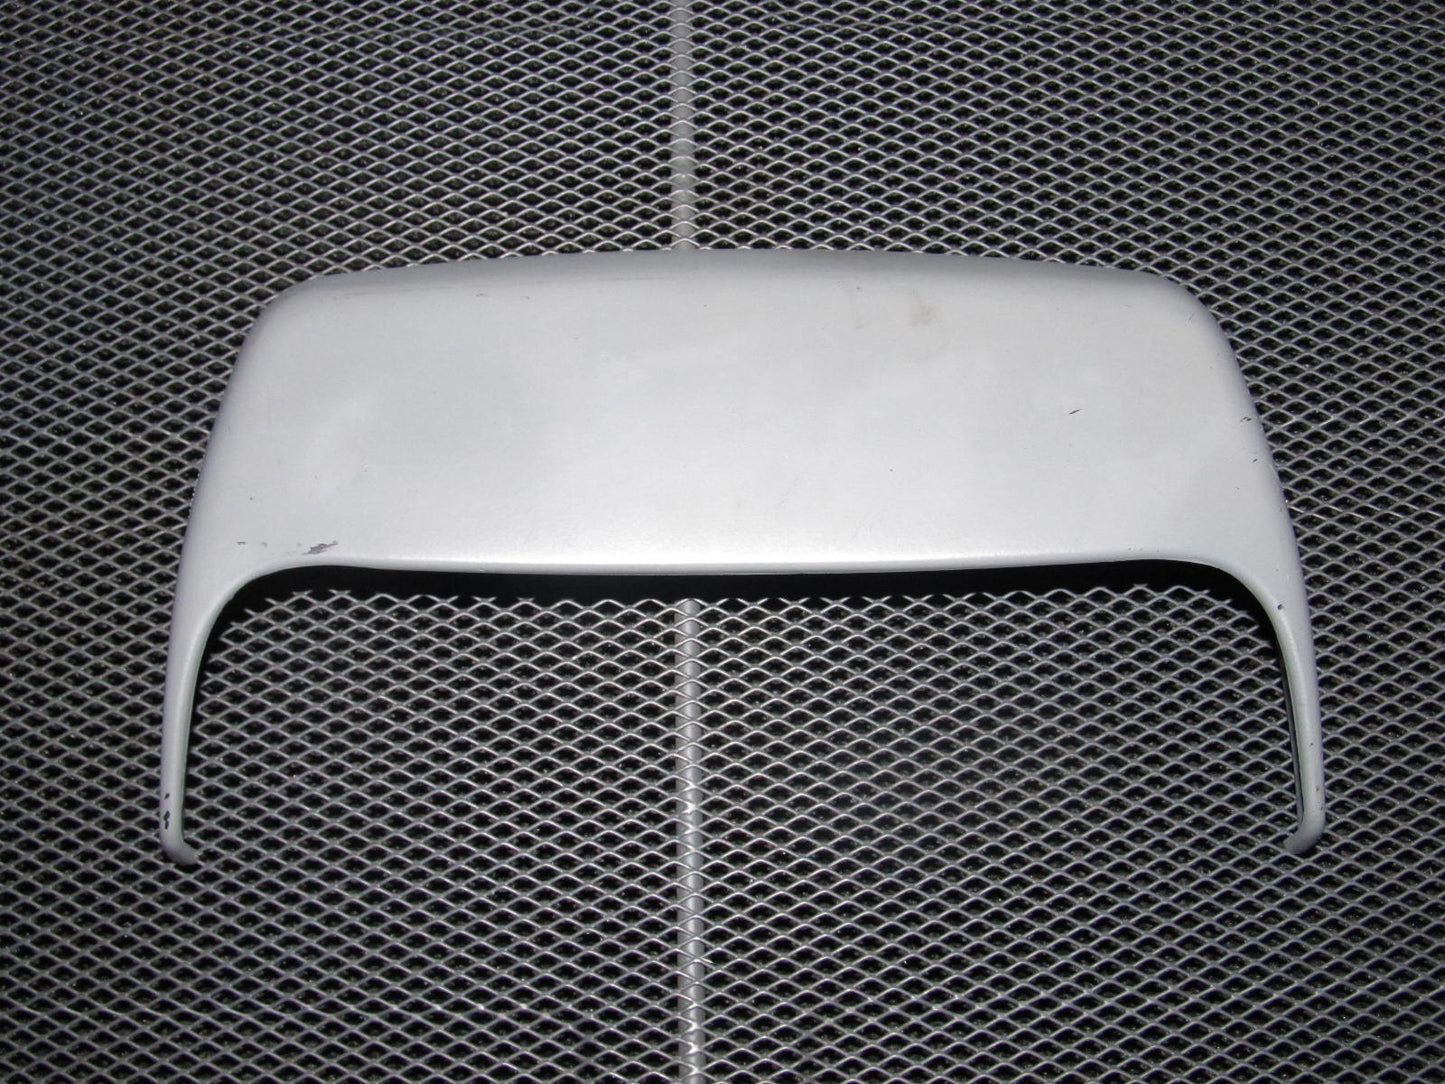 96-01 Audi A4 OEM Gray Third Brake Lamp Cover